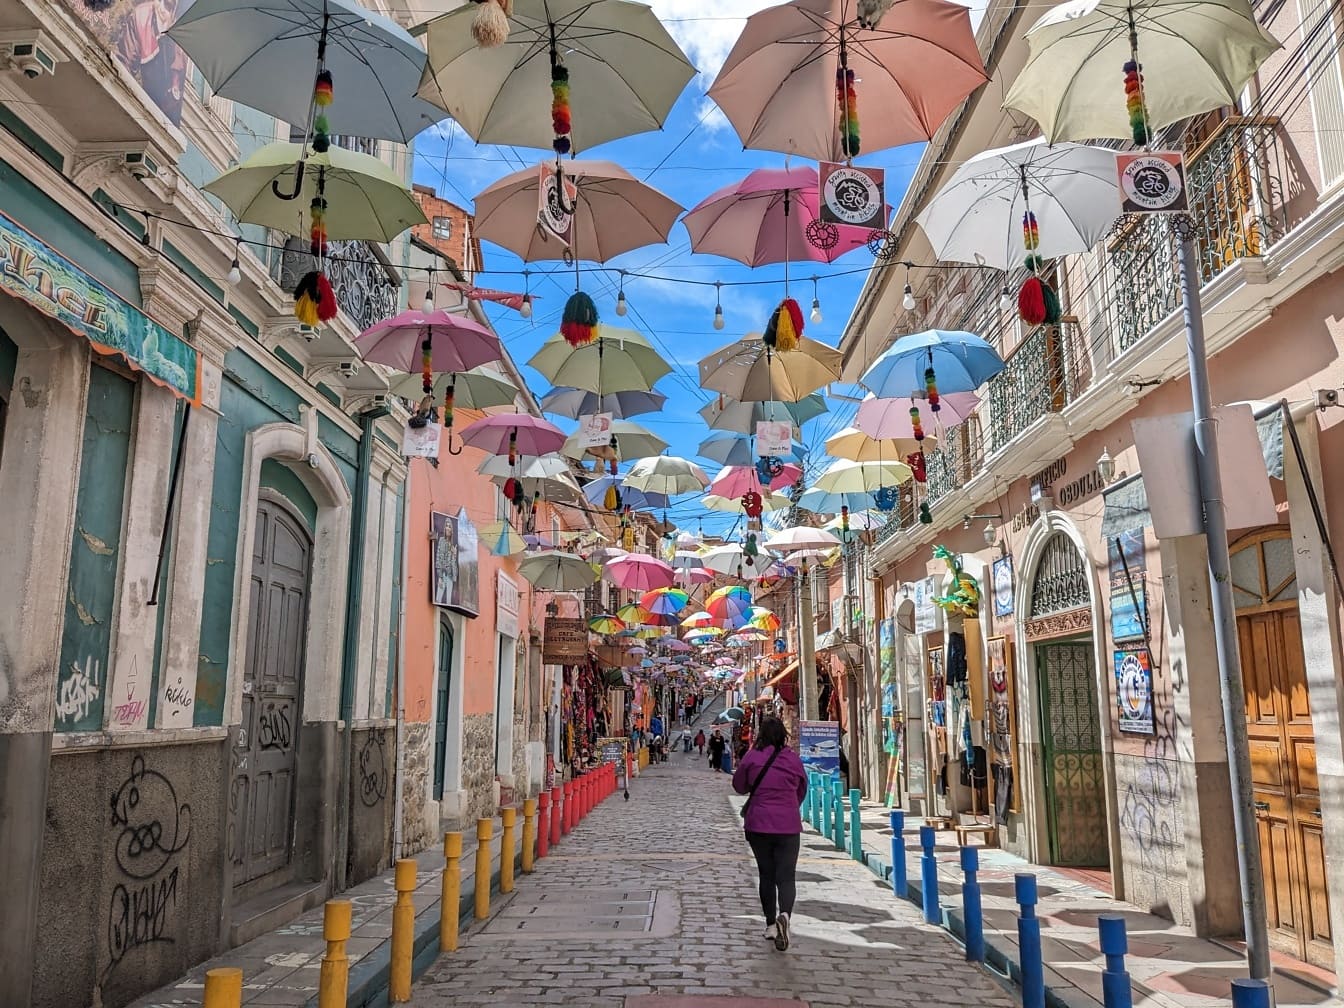 형형색색의 우산이 매달려 있는 거리, 유명한 관광 명소